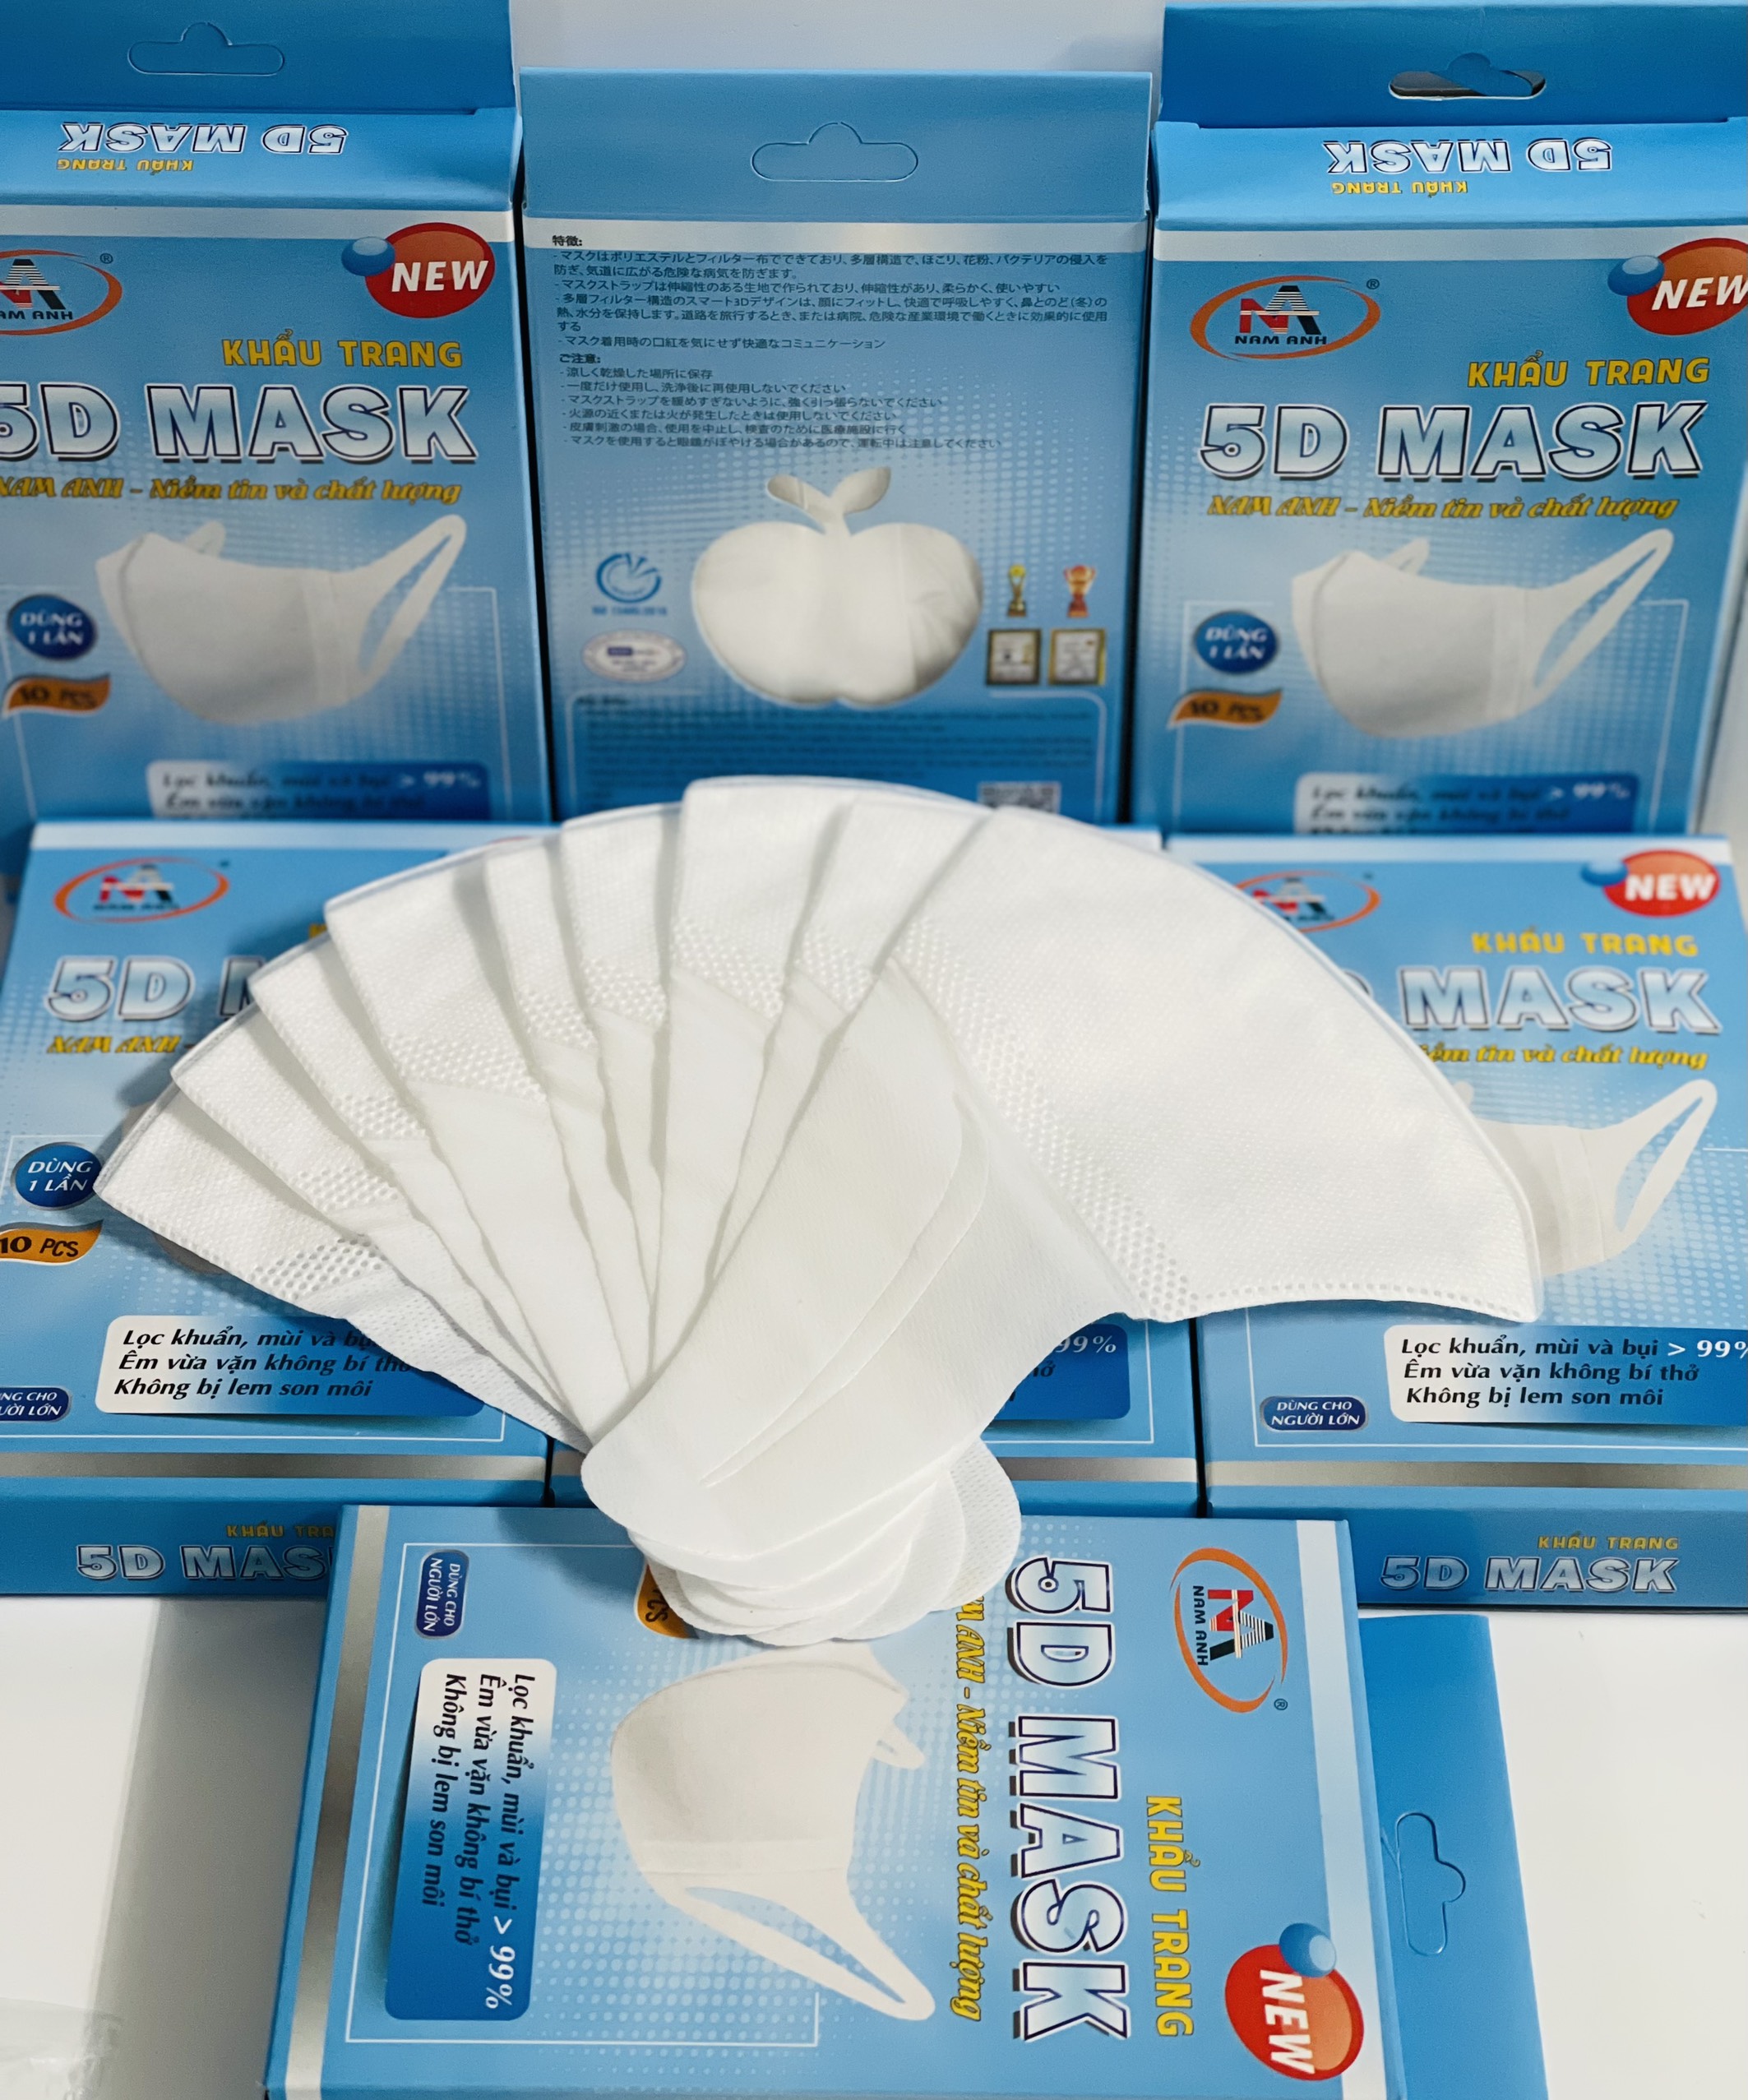 [Combo 3 Hộp Chính hãng] Khẩu trang y tế kháng khuẩn 3 lớp Famapro 5D Mask/ Giá ưu đãi Tiêu chuẩn quốc tế hộp 10 cái dây vải